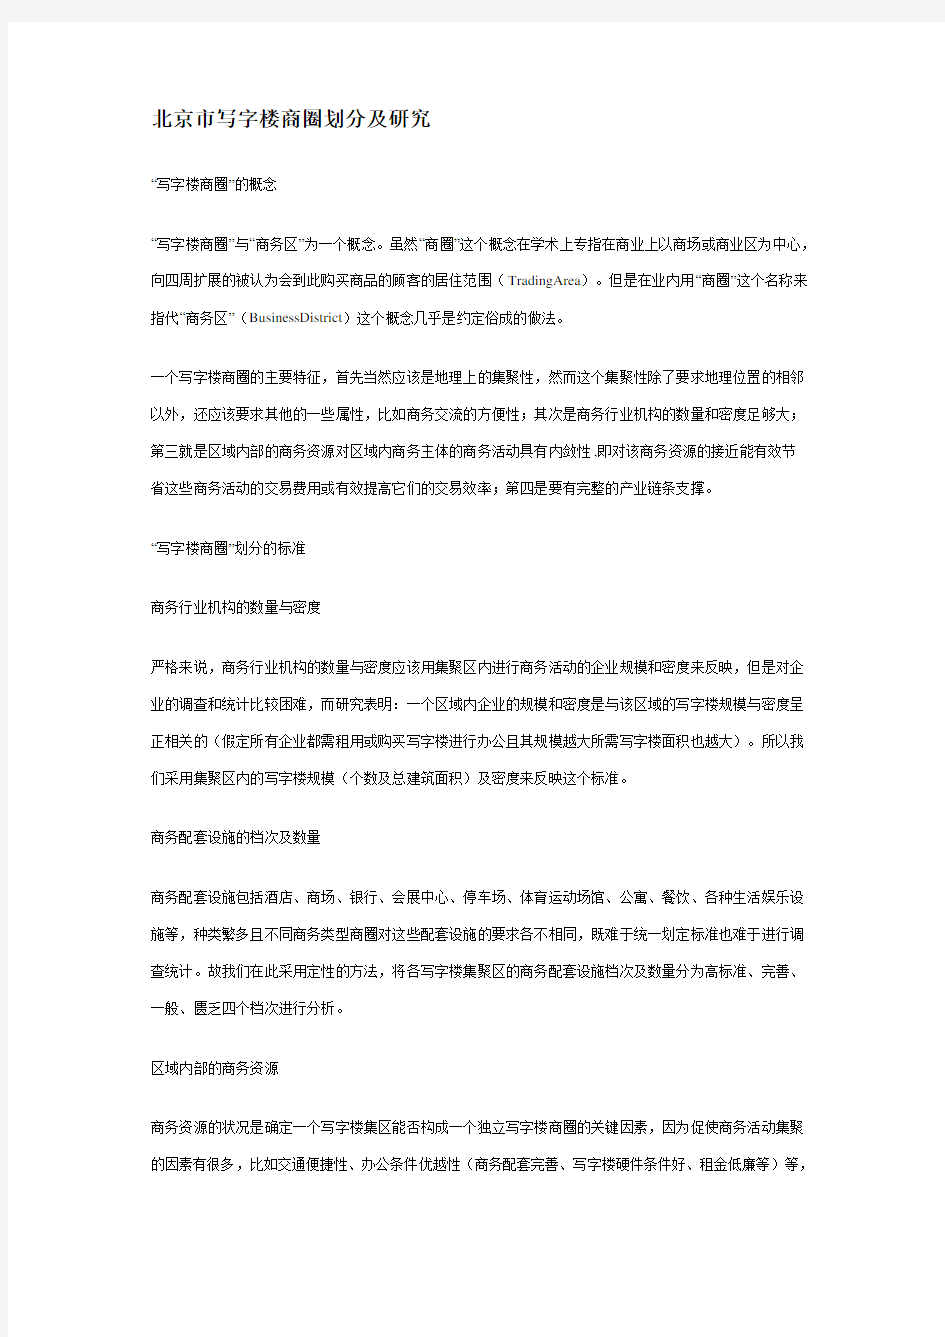 (完整版)北京市写字楼商圈划分及研究